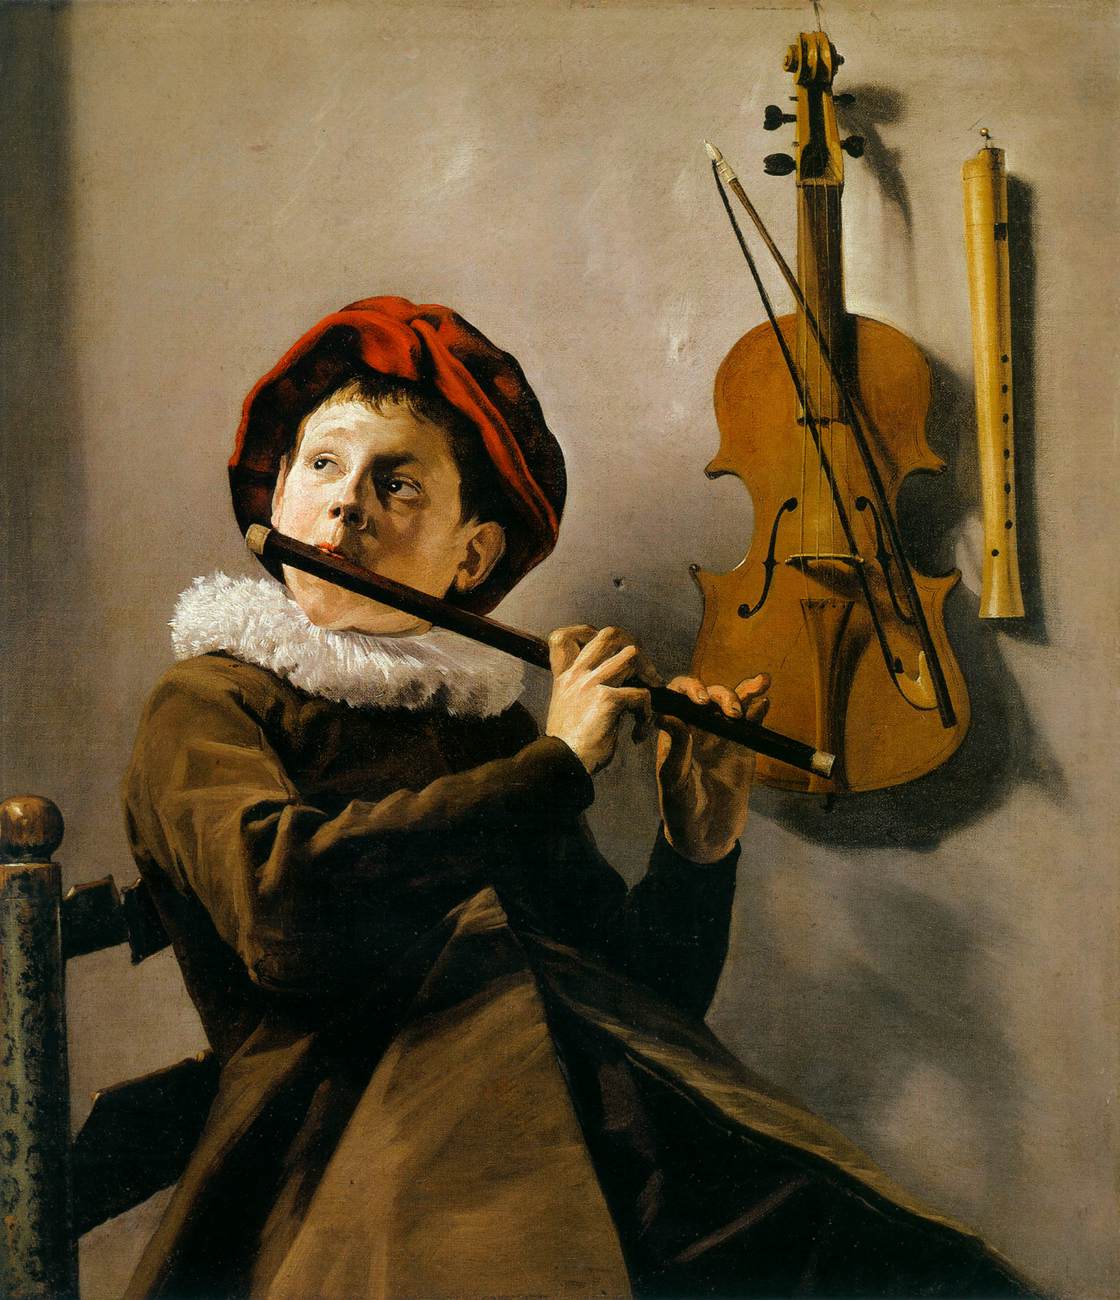 Junge spielt eine Flöte